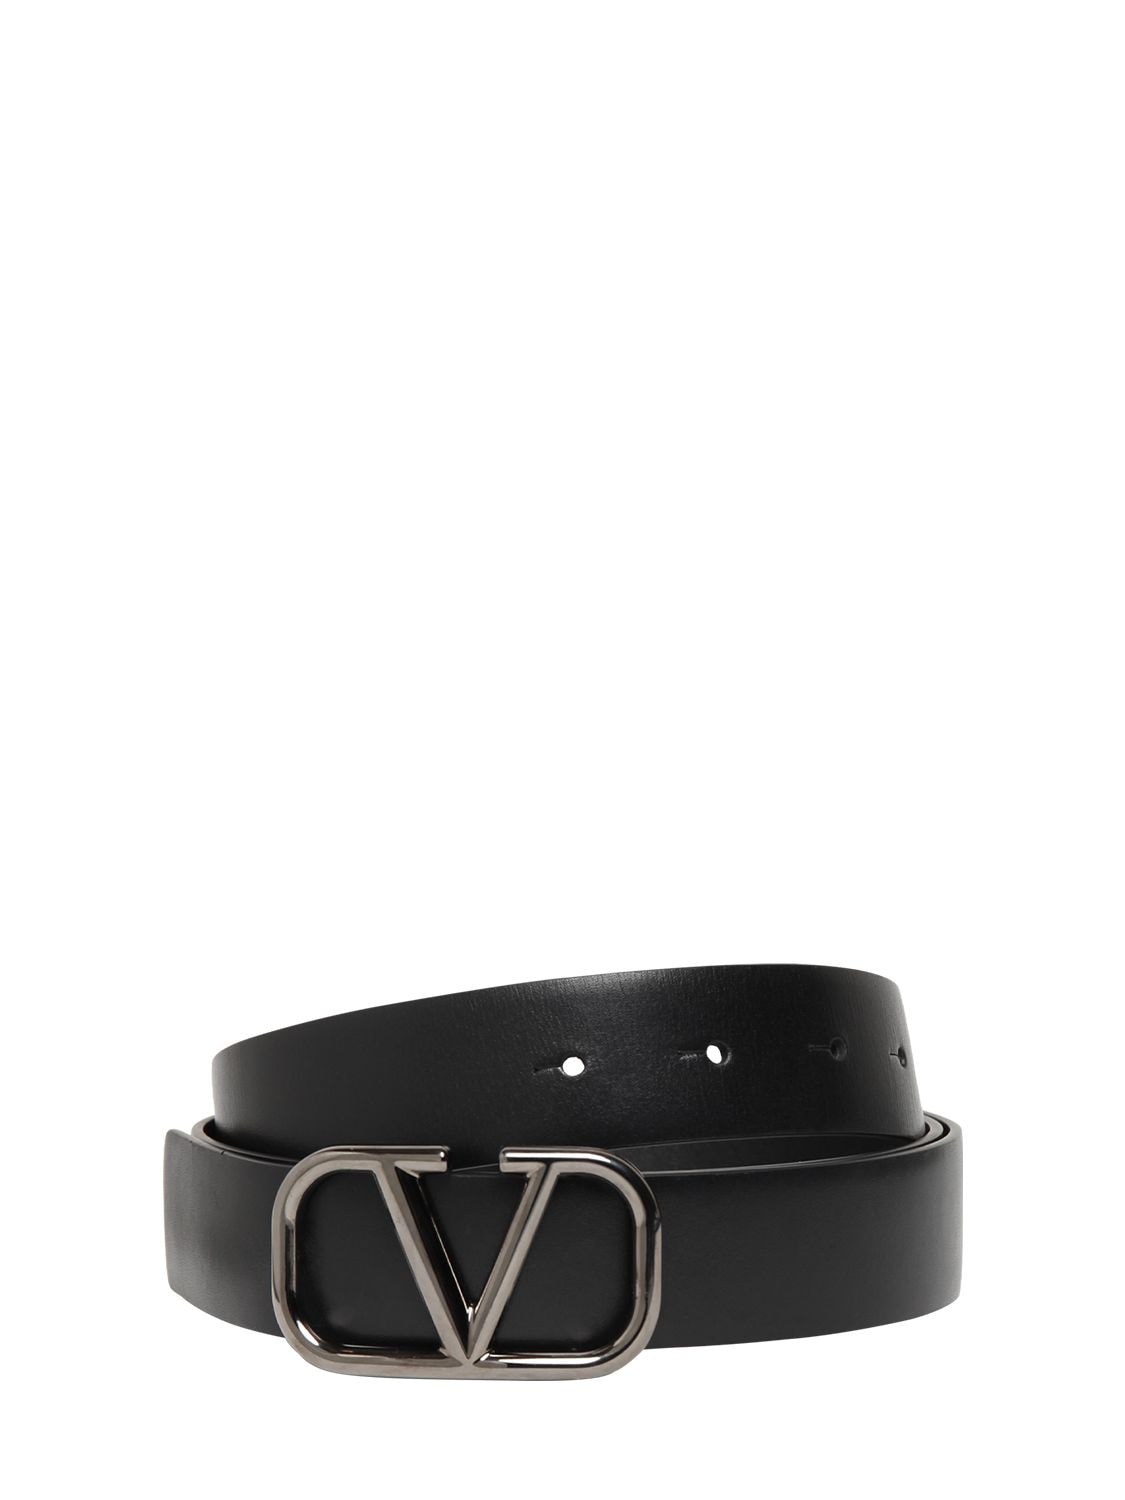 Image of 30mmm Leather Belt W/ V-logo Buckle